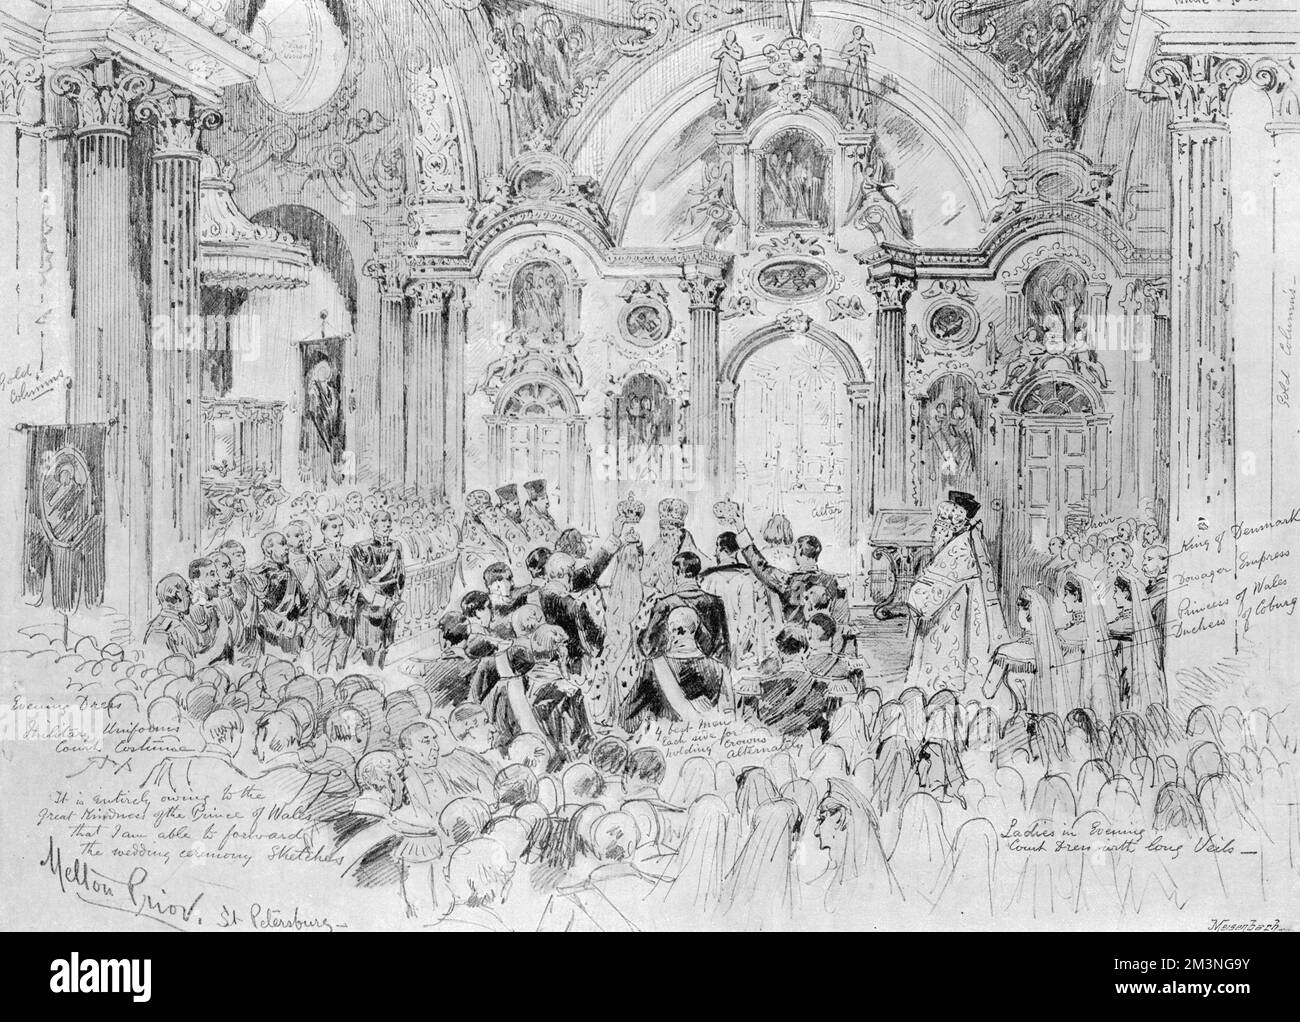 Le rite symbolique du « couronnement matrimonial » est exécuté lors du mariage de la Grande duchesse Alexandra Feodorovna, princesse Alix de Hesse, à l'empereur Nicolas II dans la chapelle du Palais d'hiver. Date : 26th novembre 1894 Banque D'Images